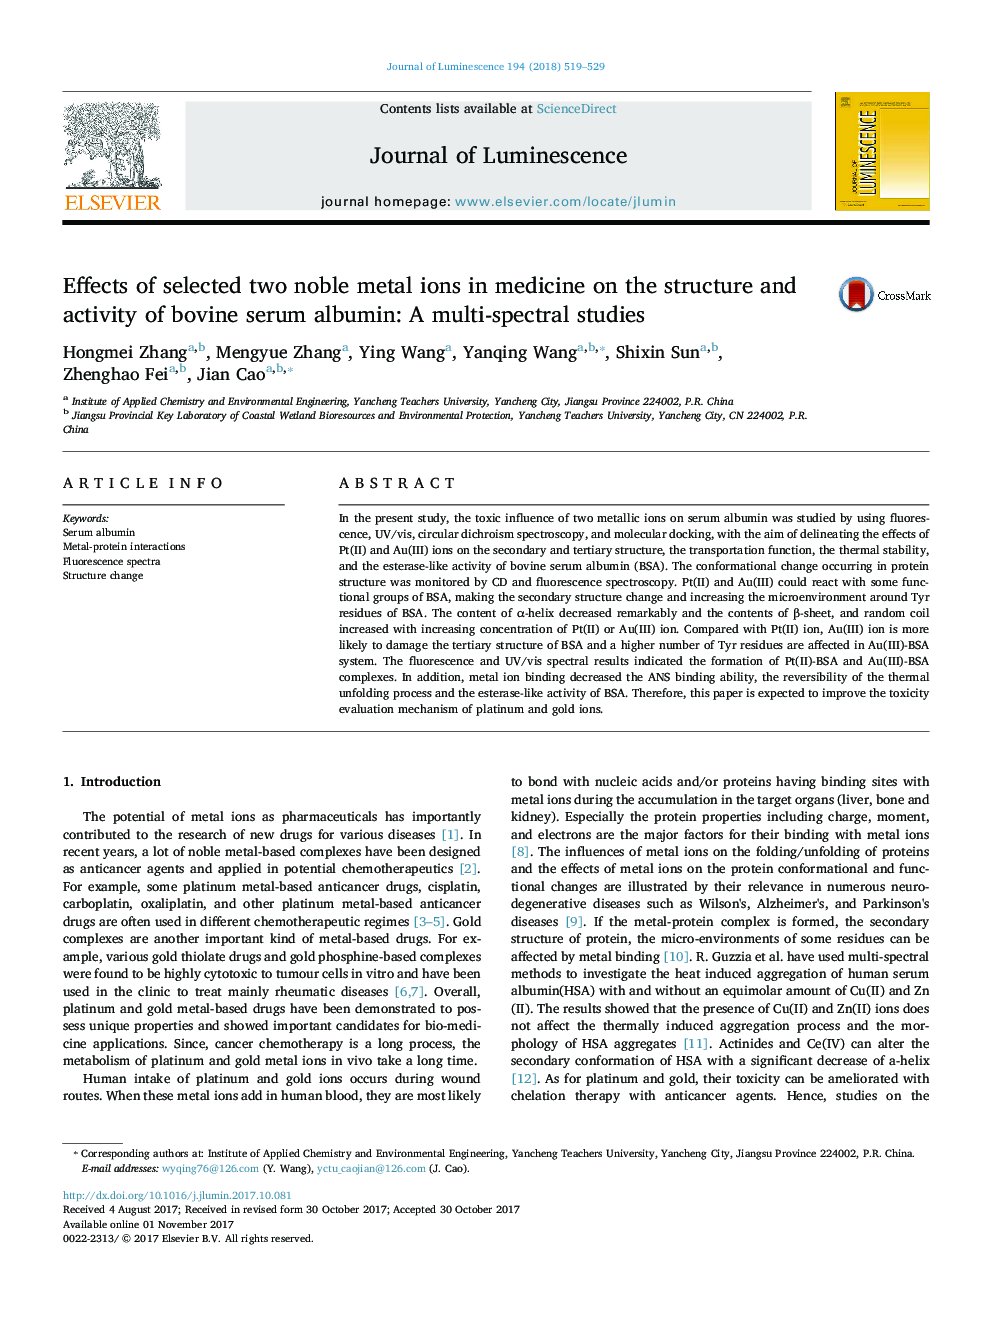 اثرات دو یون فلز نجیب در پزشکی بر روی ساختار و فعالیت آلبومین سرم گاو: مطالعات چندتایی 